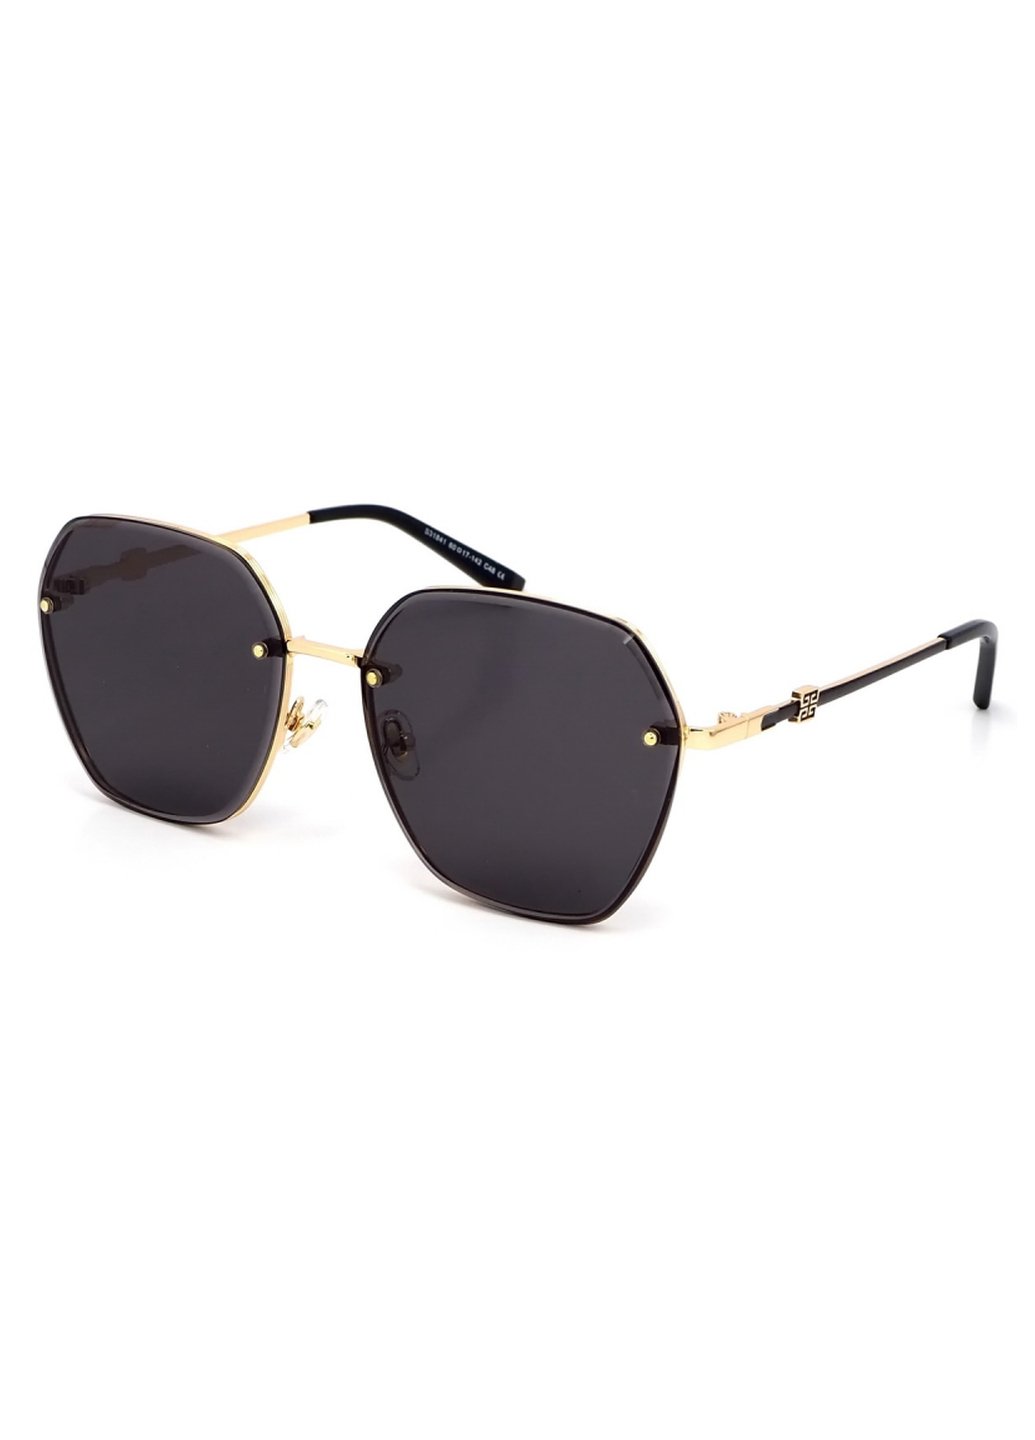 Купить Женские солнцезащитные очки Merlini с поляризацией S31841 117115 - Золотистый в интернет-магазине